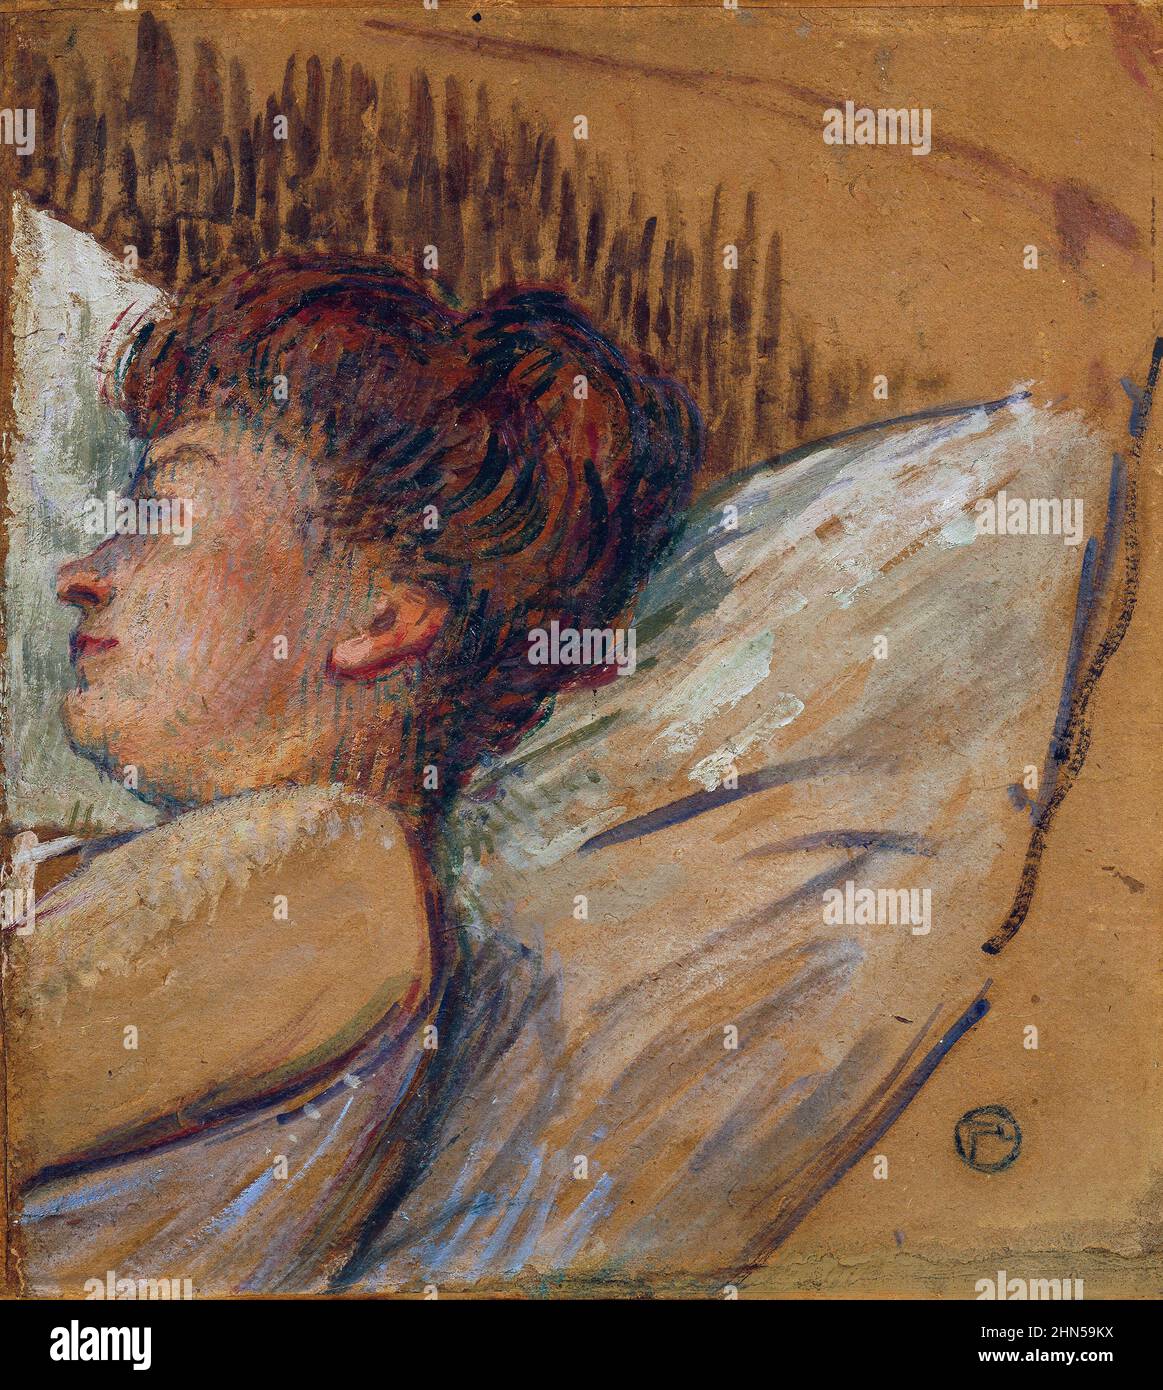 Frau im Bett (1893-1895). Antique vintage art by Henri Toulouse-Lautrec. Stock Photo